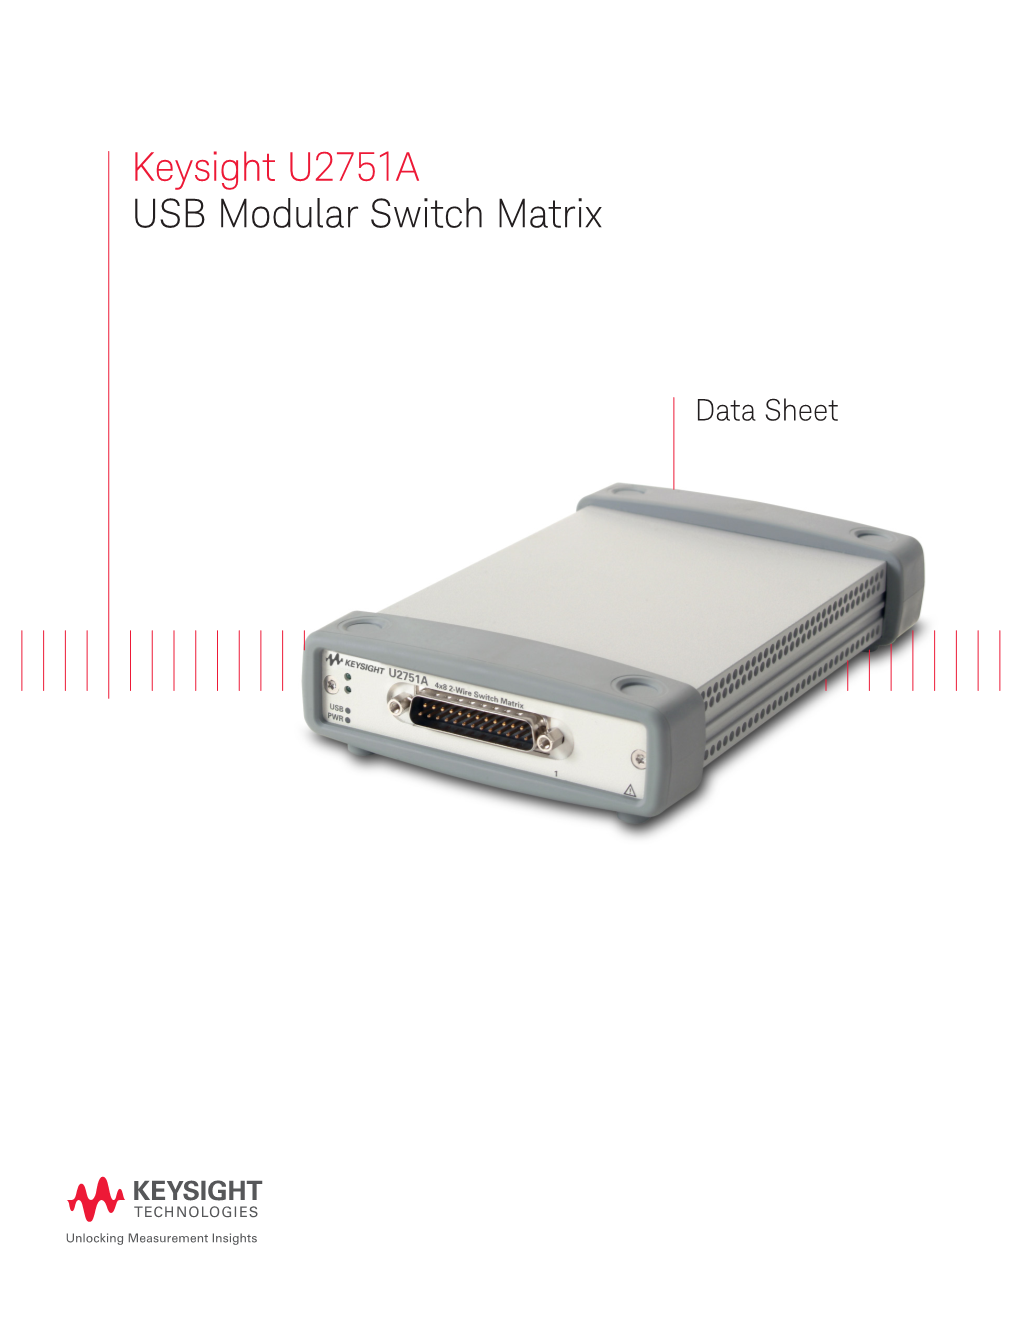 U2751A USB Modular Switch Matrix–Data Sheet